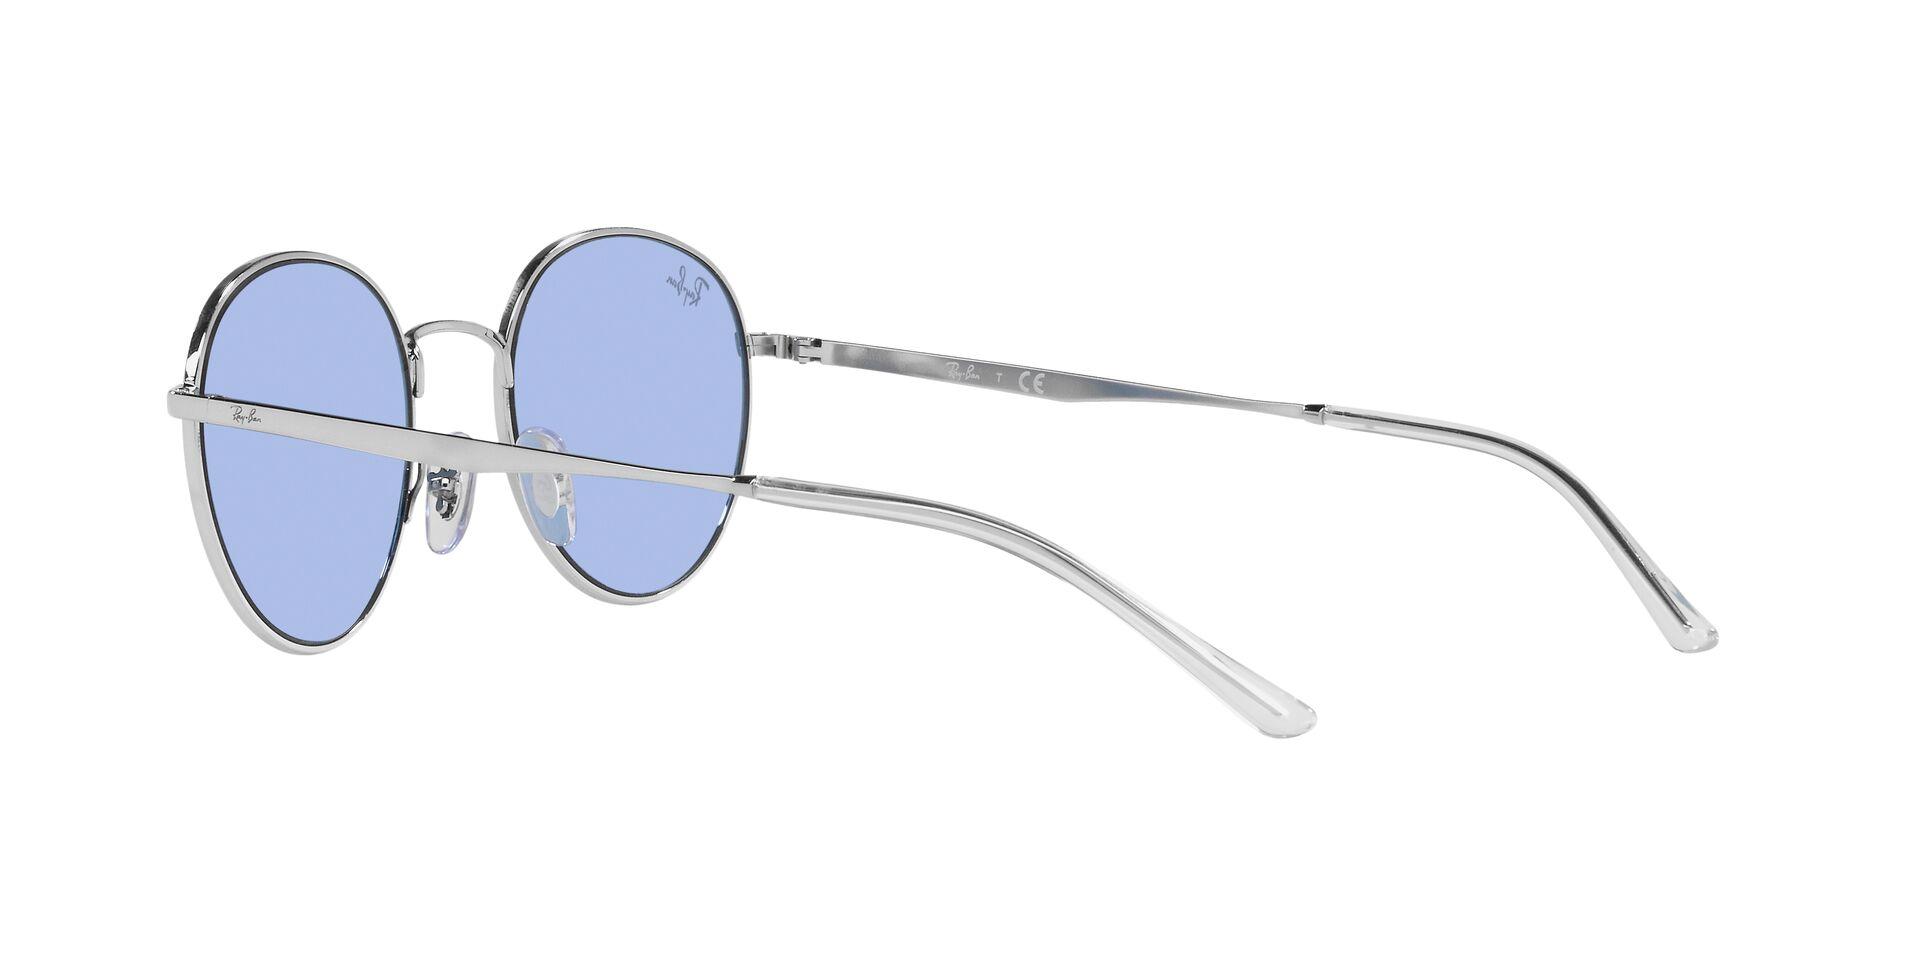 Mắt kính RAY-BAN - - RB3681 003/80 -Sunglasses